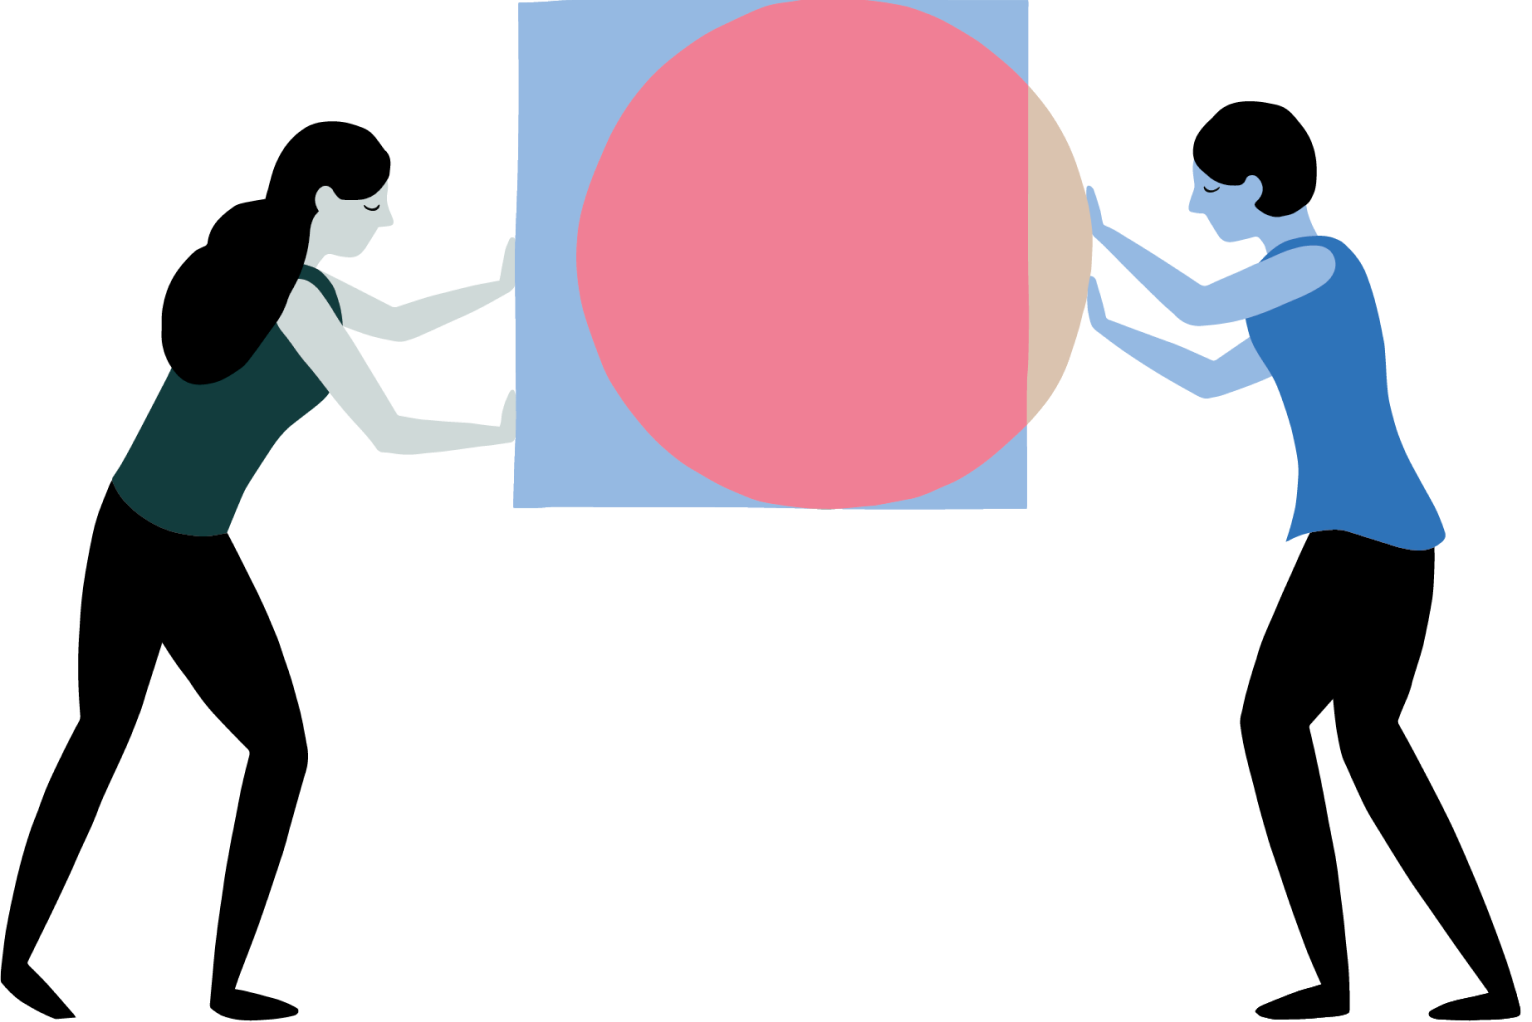 Une femme pousse un carré vers une autre femme qui pousse un cercle, et les deux formes se superposent.